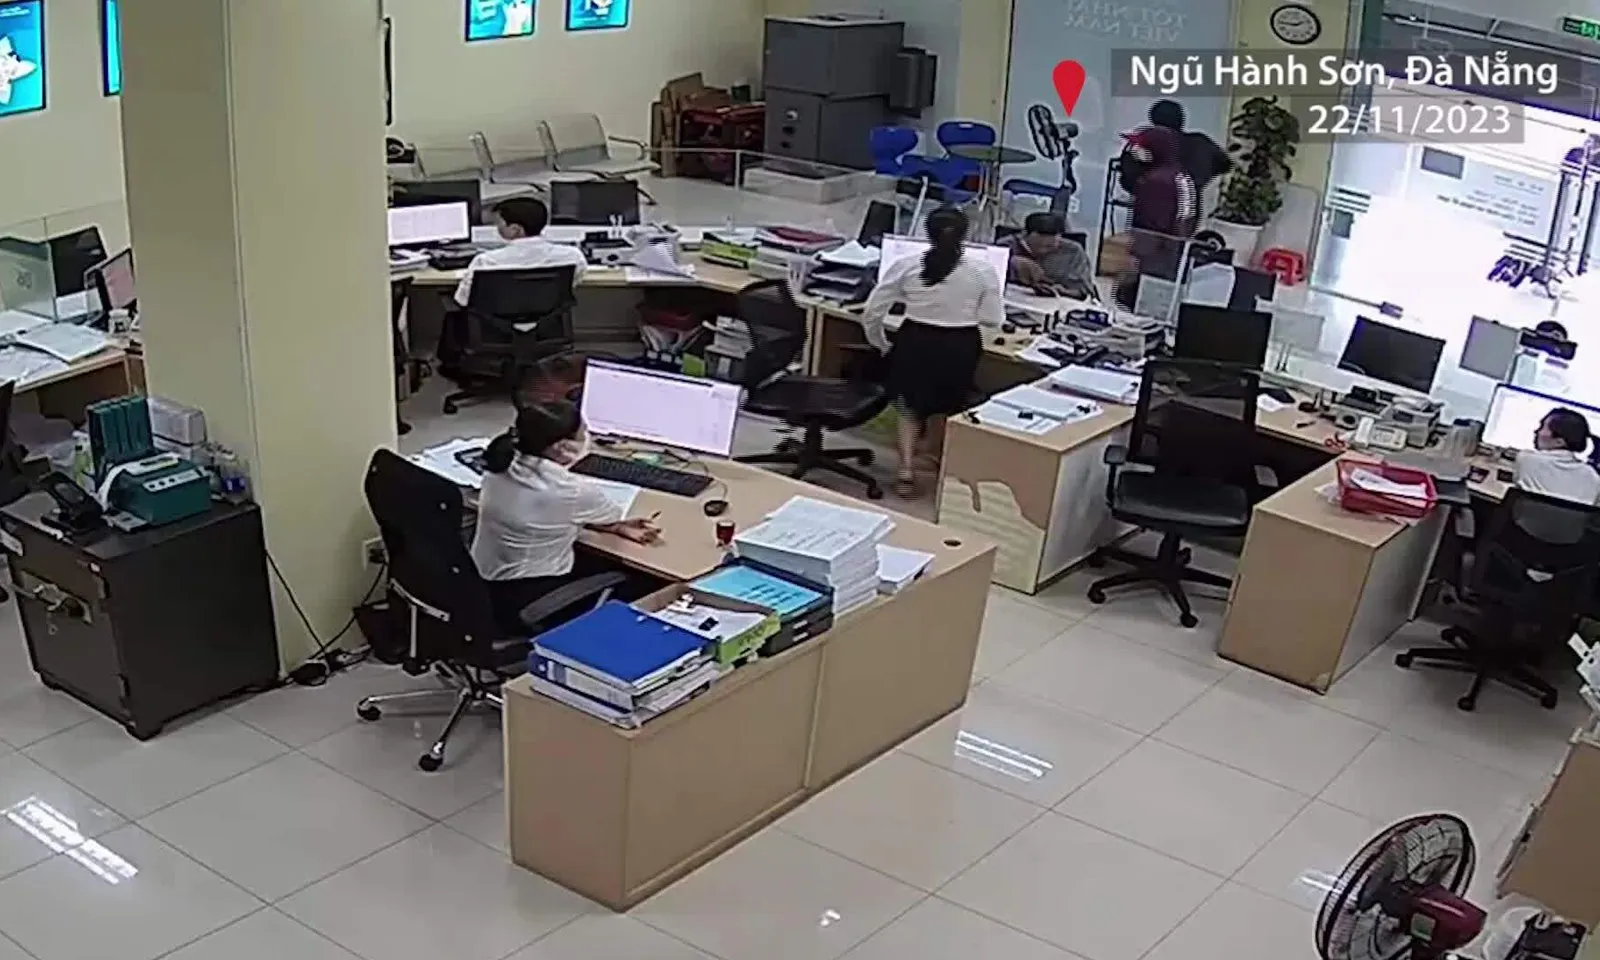 Vụ cướp ngân hàng ở Đà Nẵng: 2 nghi phạm quen nhau qua nhóm “Vỡ nợ làm liều”